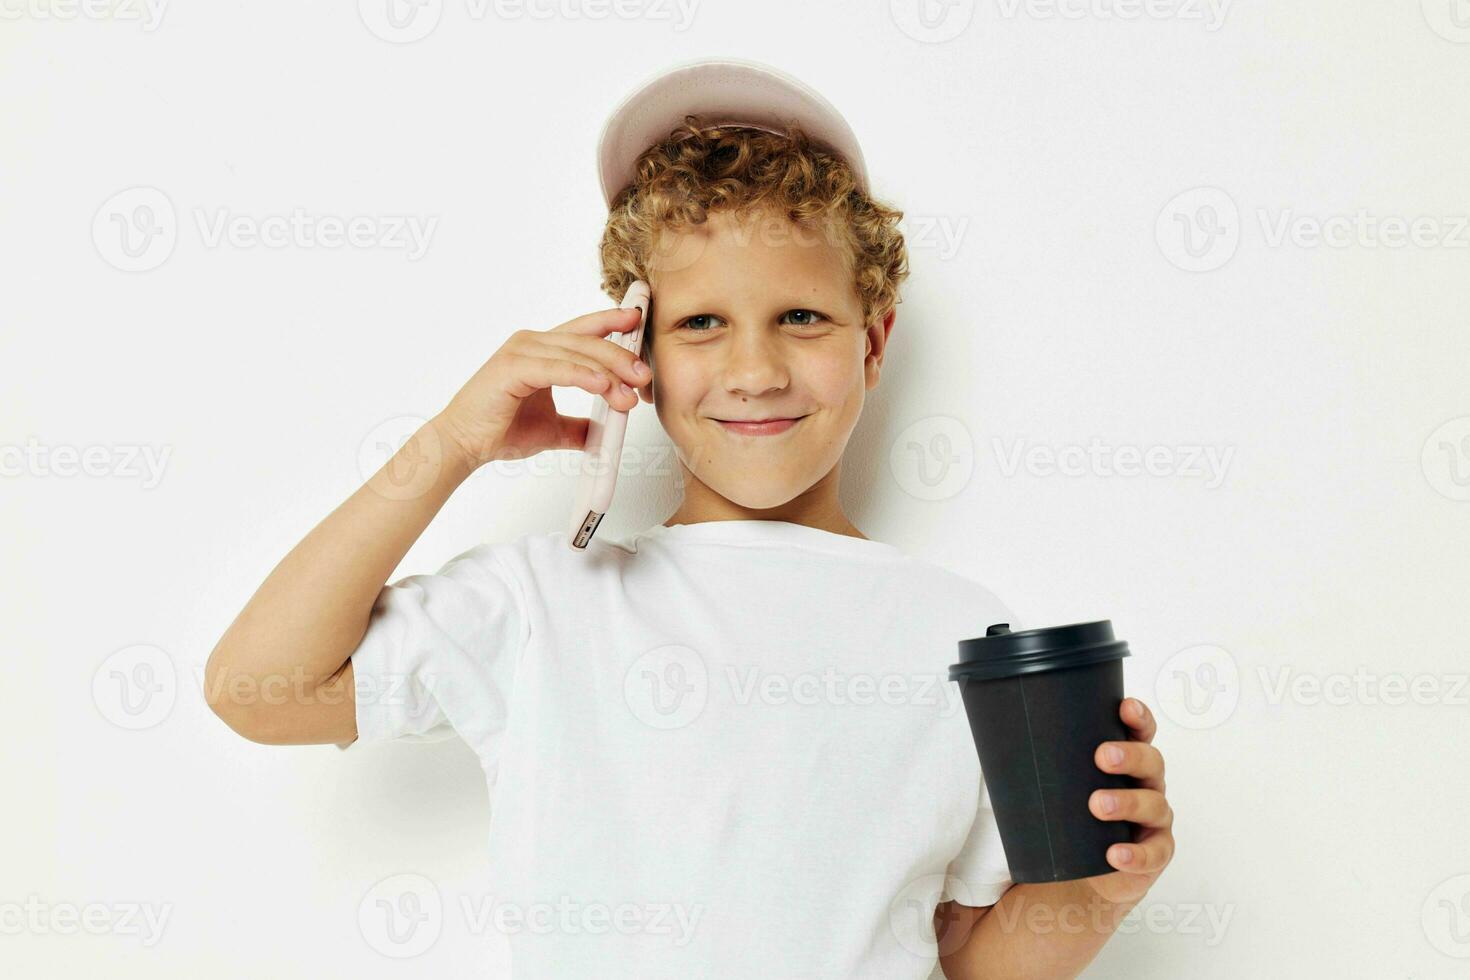 linda pequeño chico qué tipo de bebida es el teléfono en mano comunicación ligero antecedentes inalterado foto